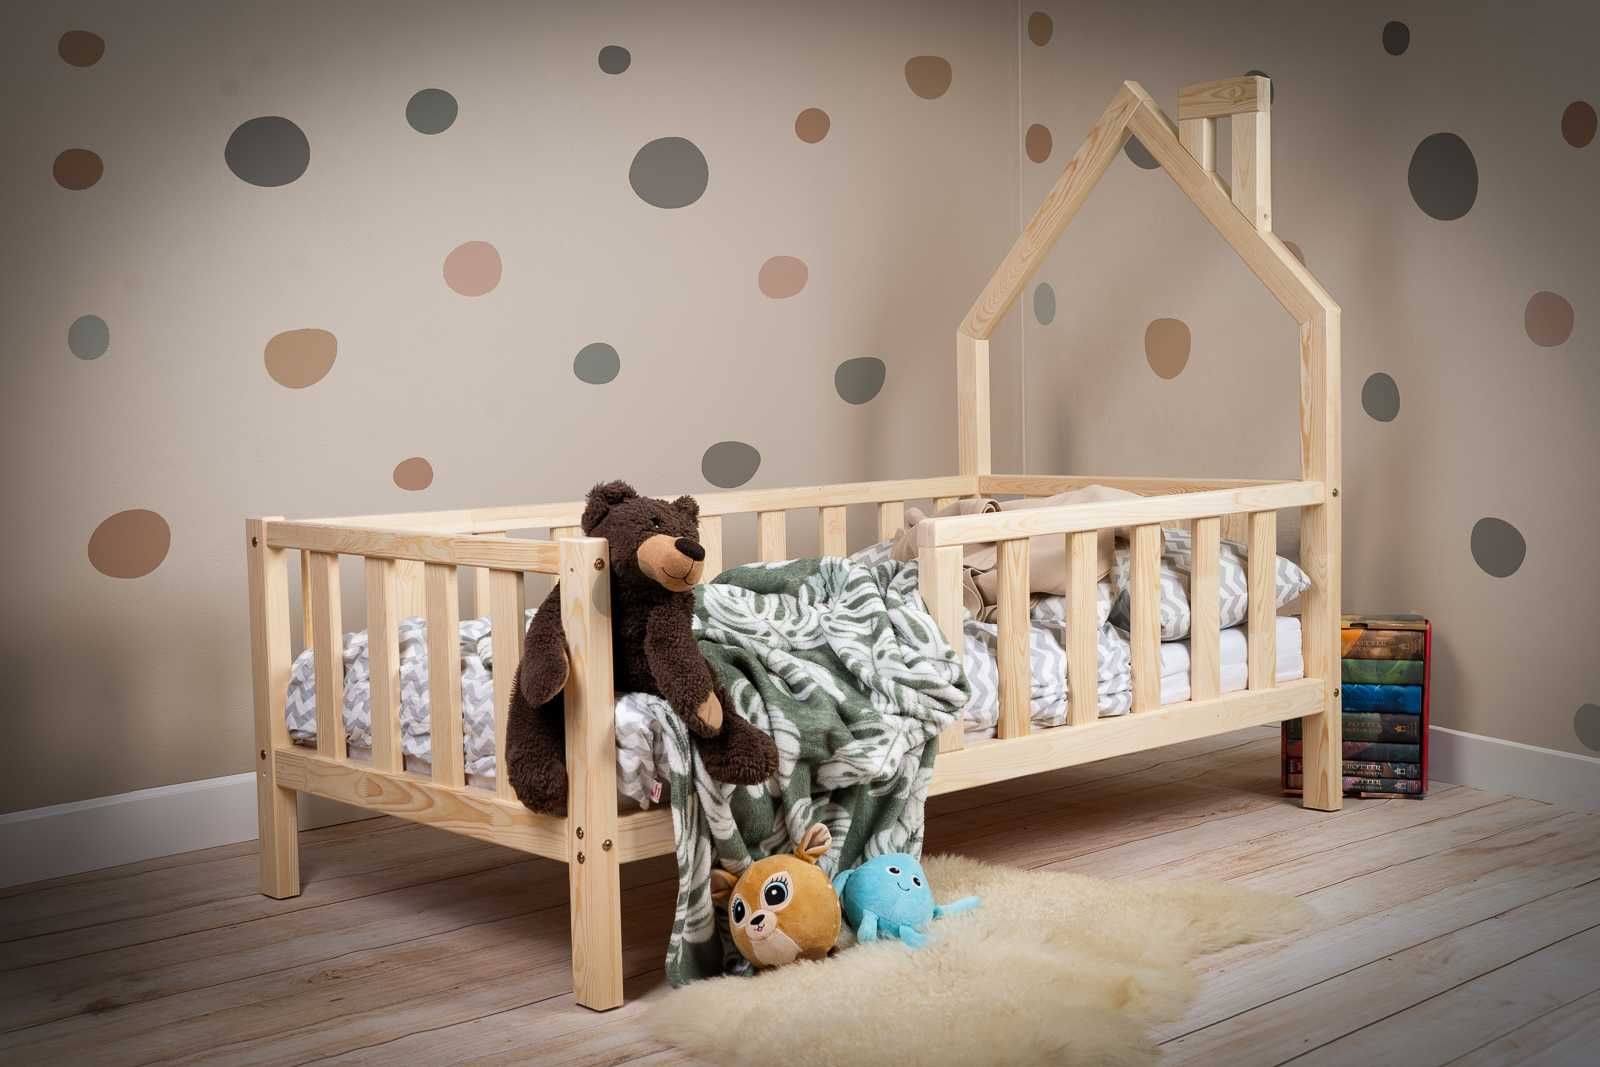 Łóżko domek dla dziecka, łóżko dziecięce domek - producent Kidbeds.pl